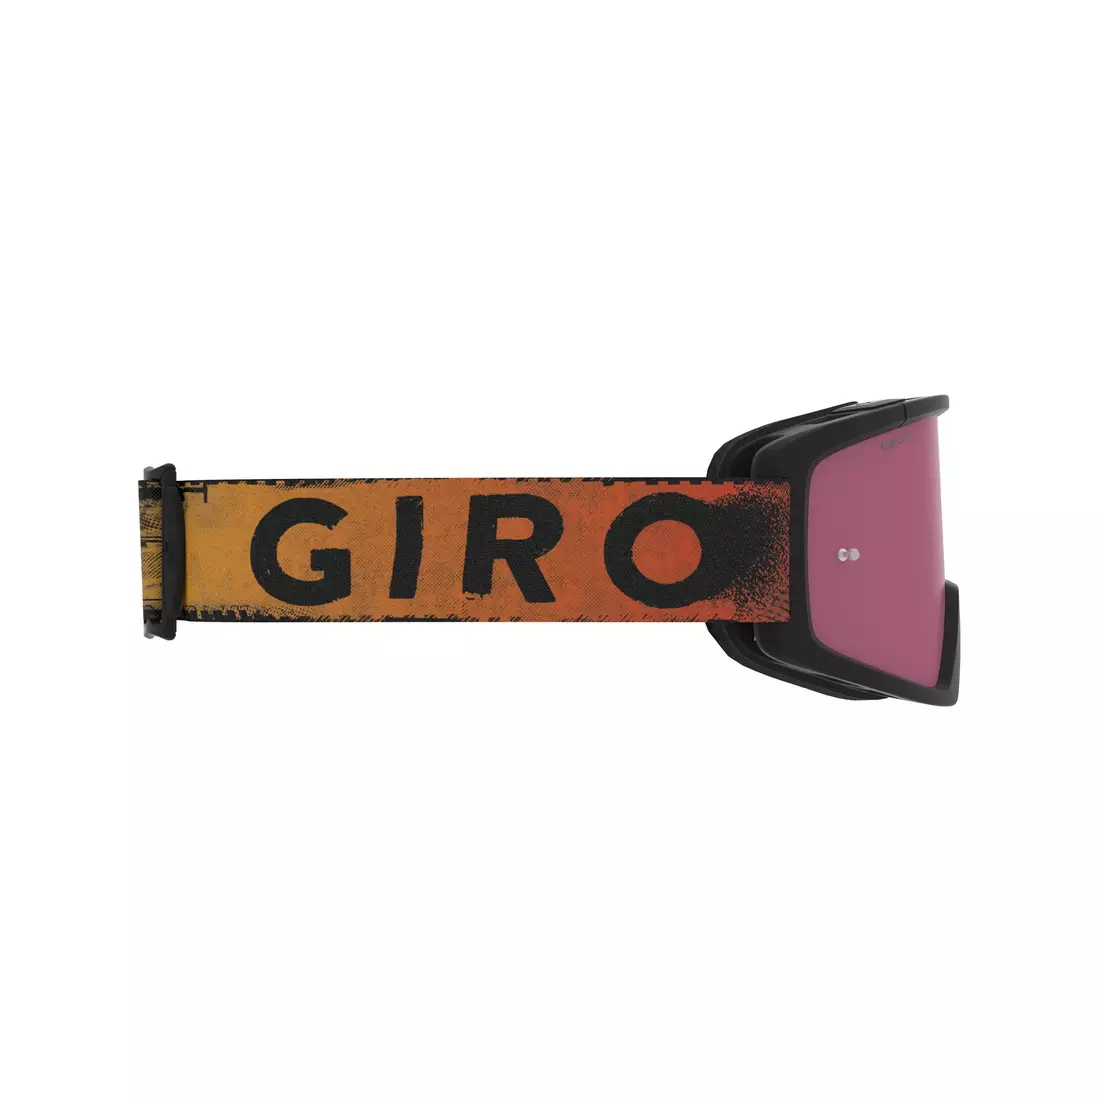 GIRO tazz mtb černé červené hypnotické brýle (barevné sklo VIVID-Carl Zeiss TRAIL + transparentní sklo 99% S0) GR-7114191